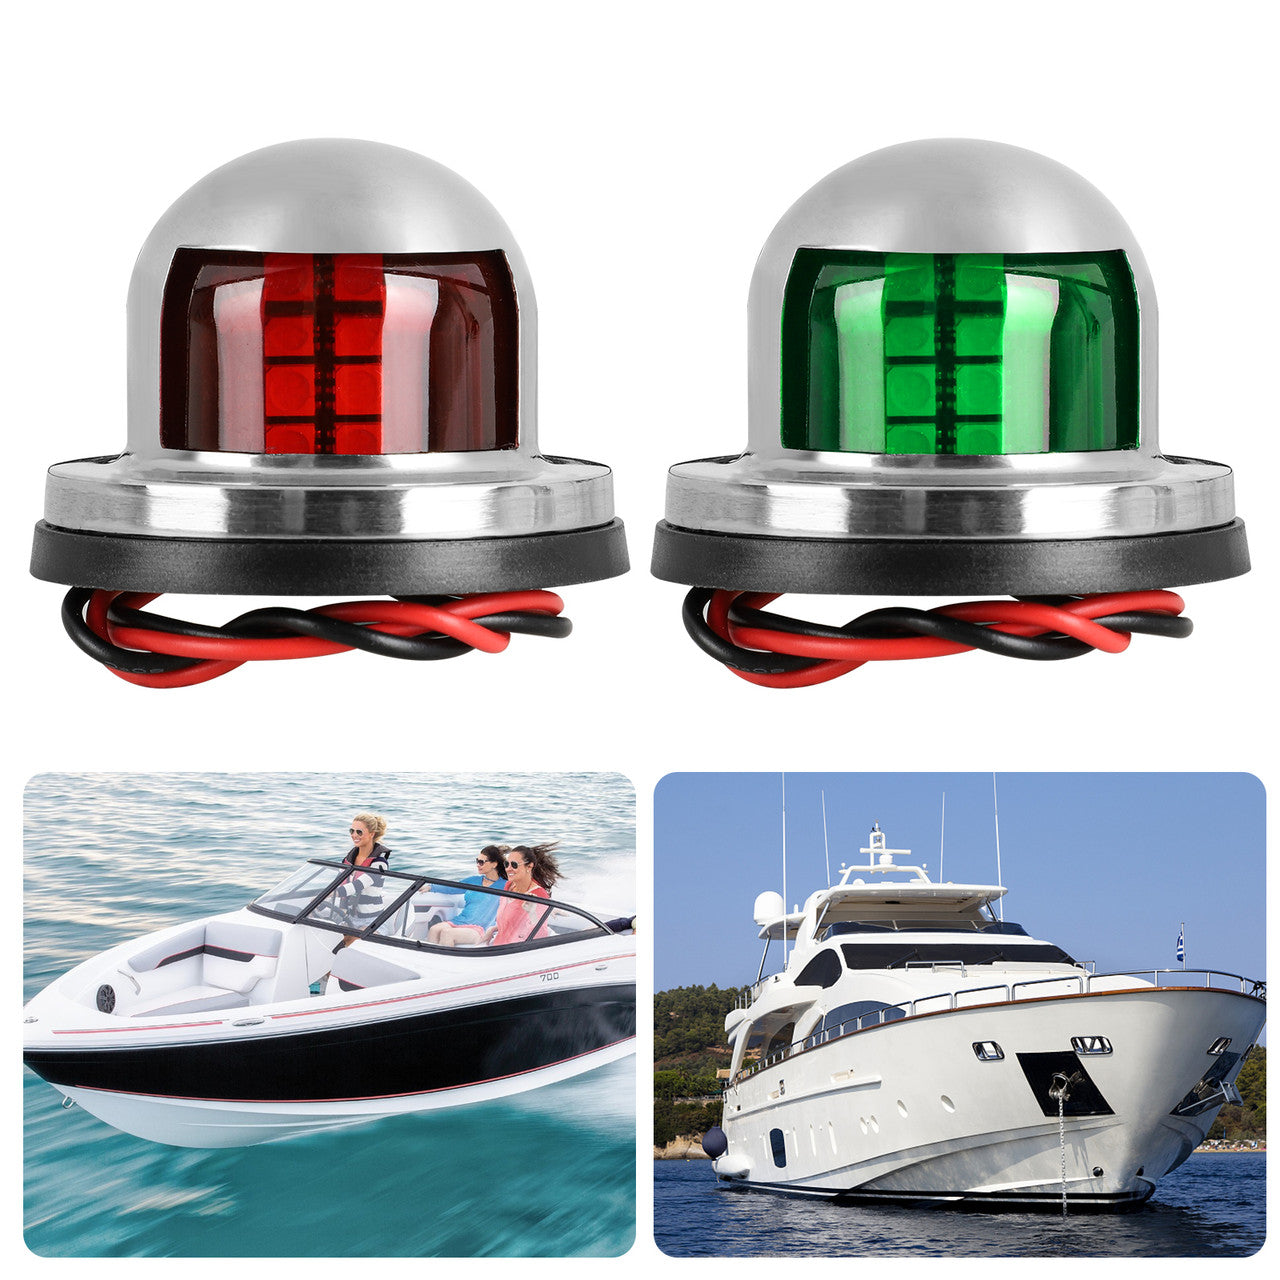 Boat Navigation Light LED, Deck Mount LED Navigation Lights (Red and Green) Perfect for Boat, Pontoon, Yacht, Skeeter, Sailing Signal Lights, Bow Side,Port, Starboard, DC 12V,2pcs